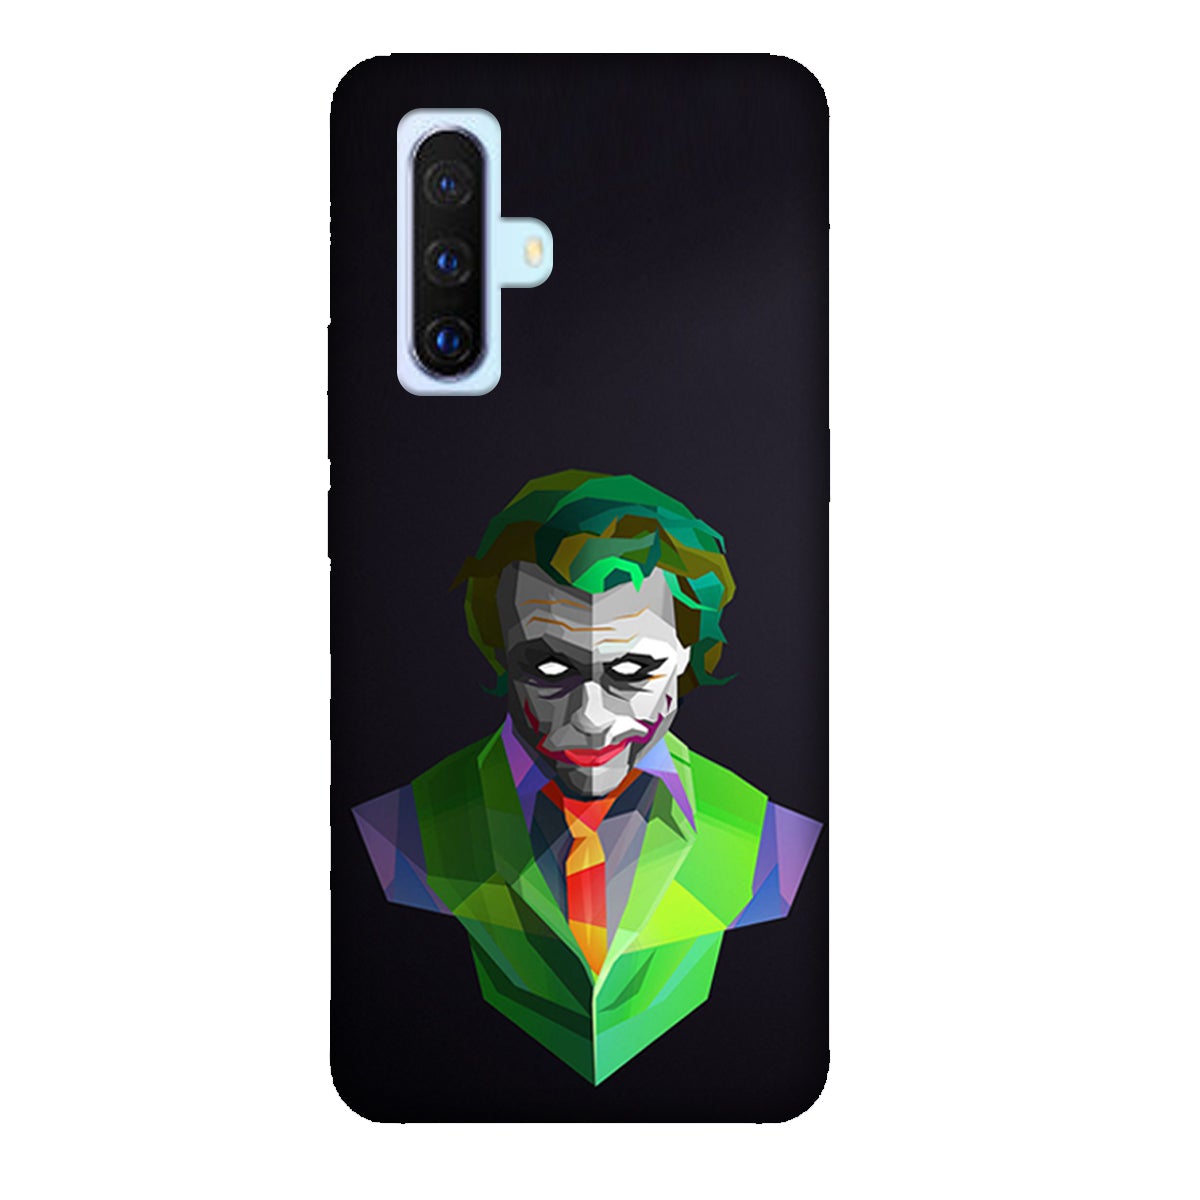 Joker Green - Mobile Phone Cover - Hard Case - Vivo